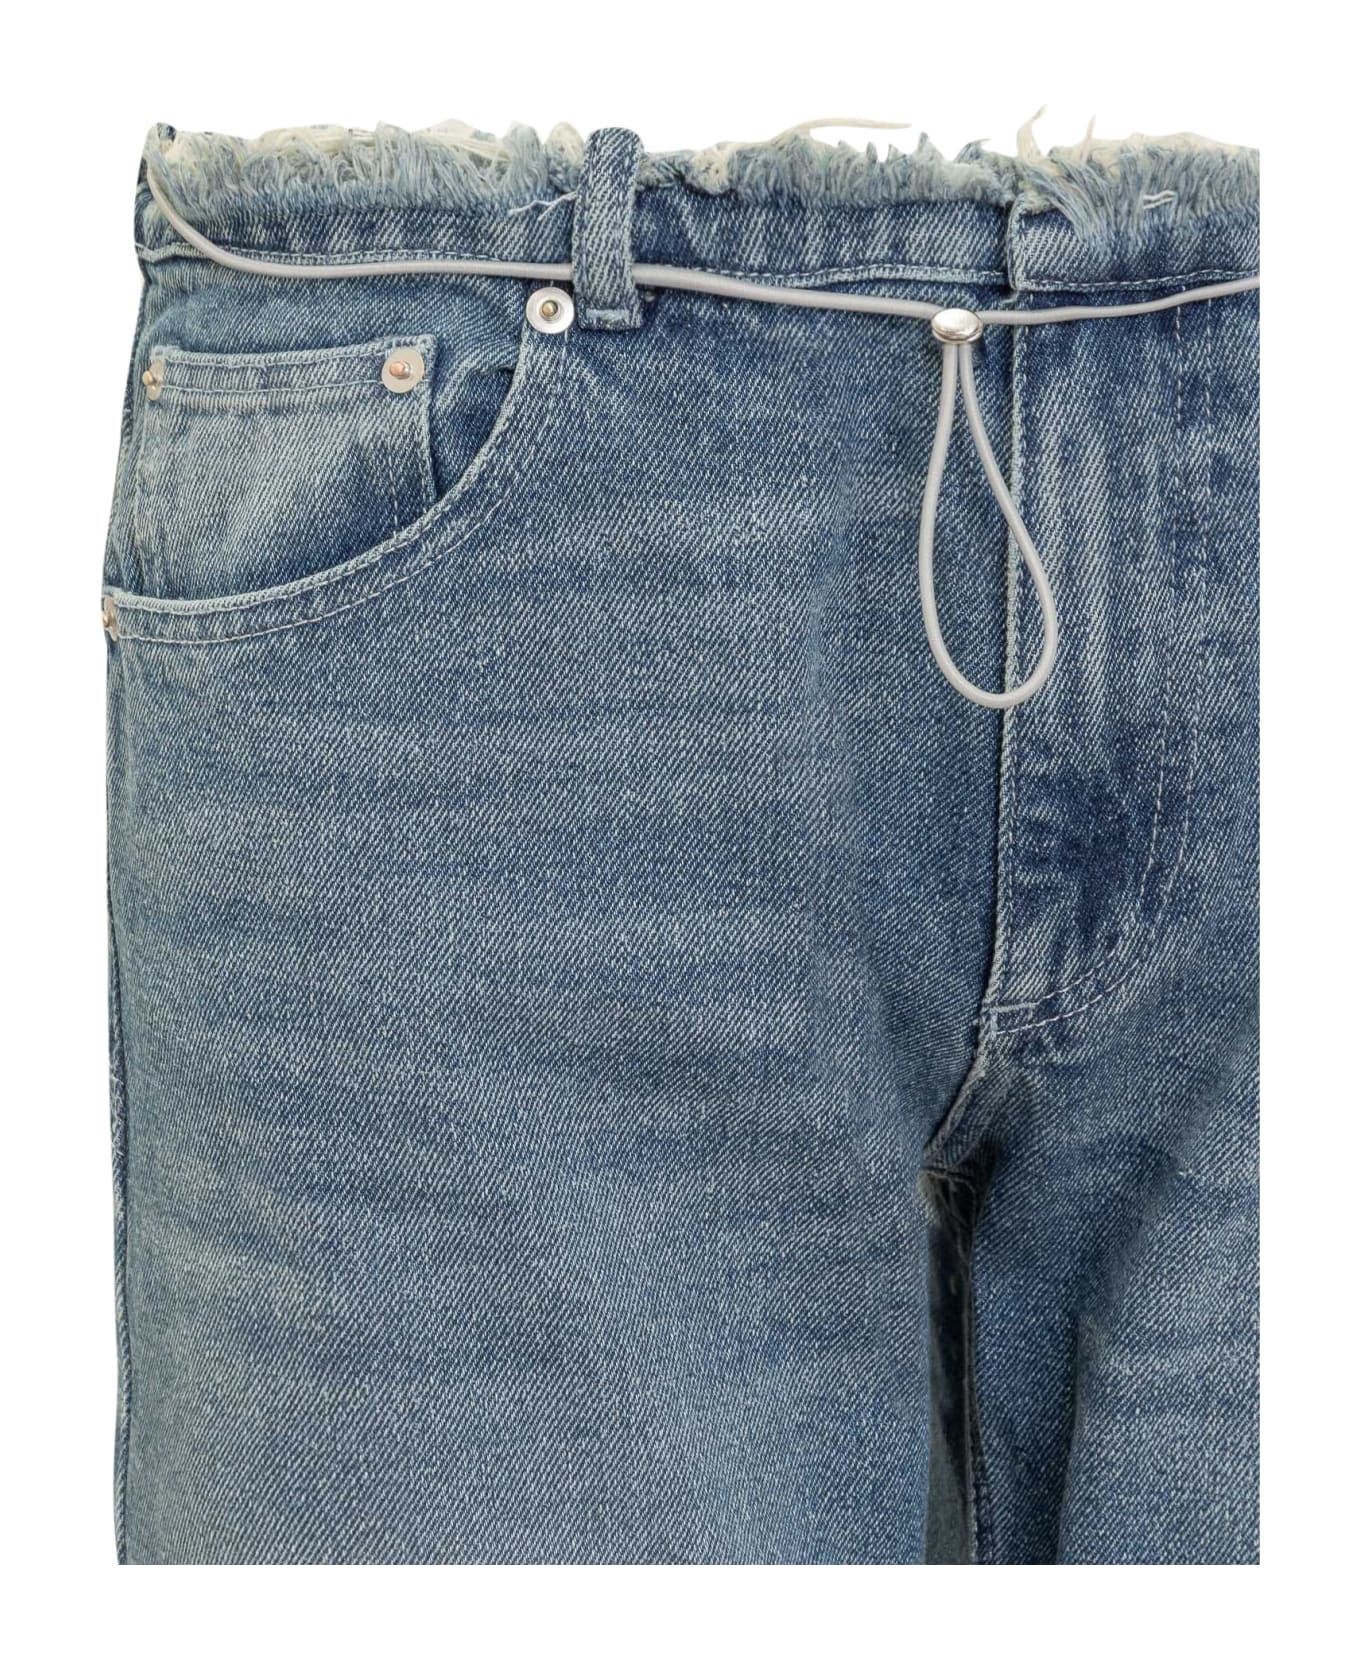 Cormio Long Jeans - Blue Denim